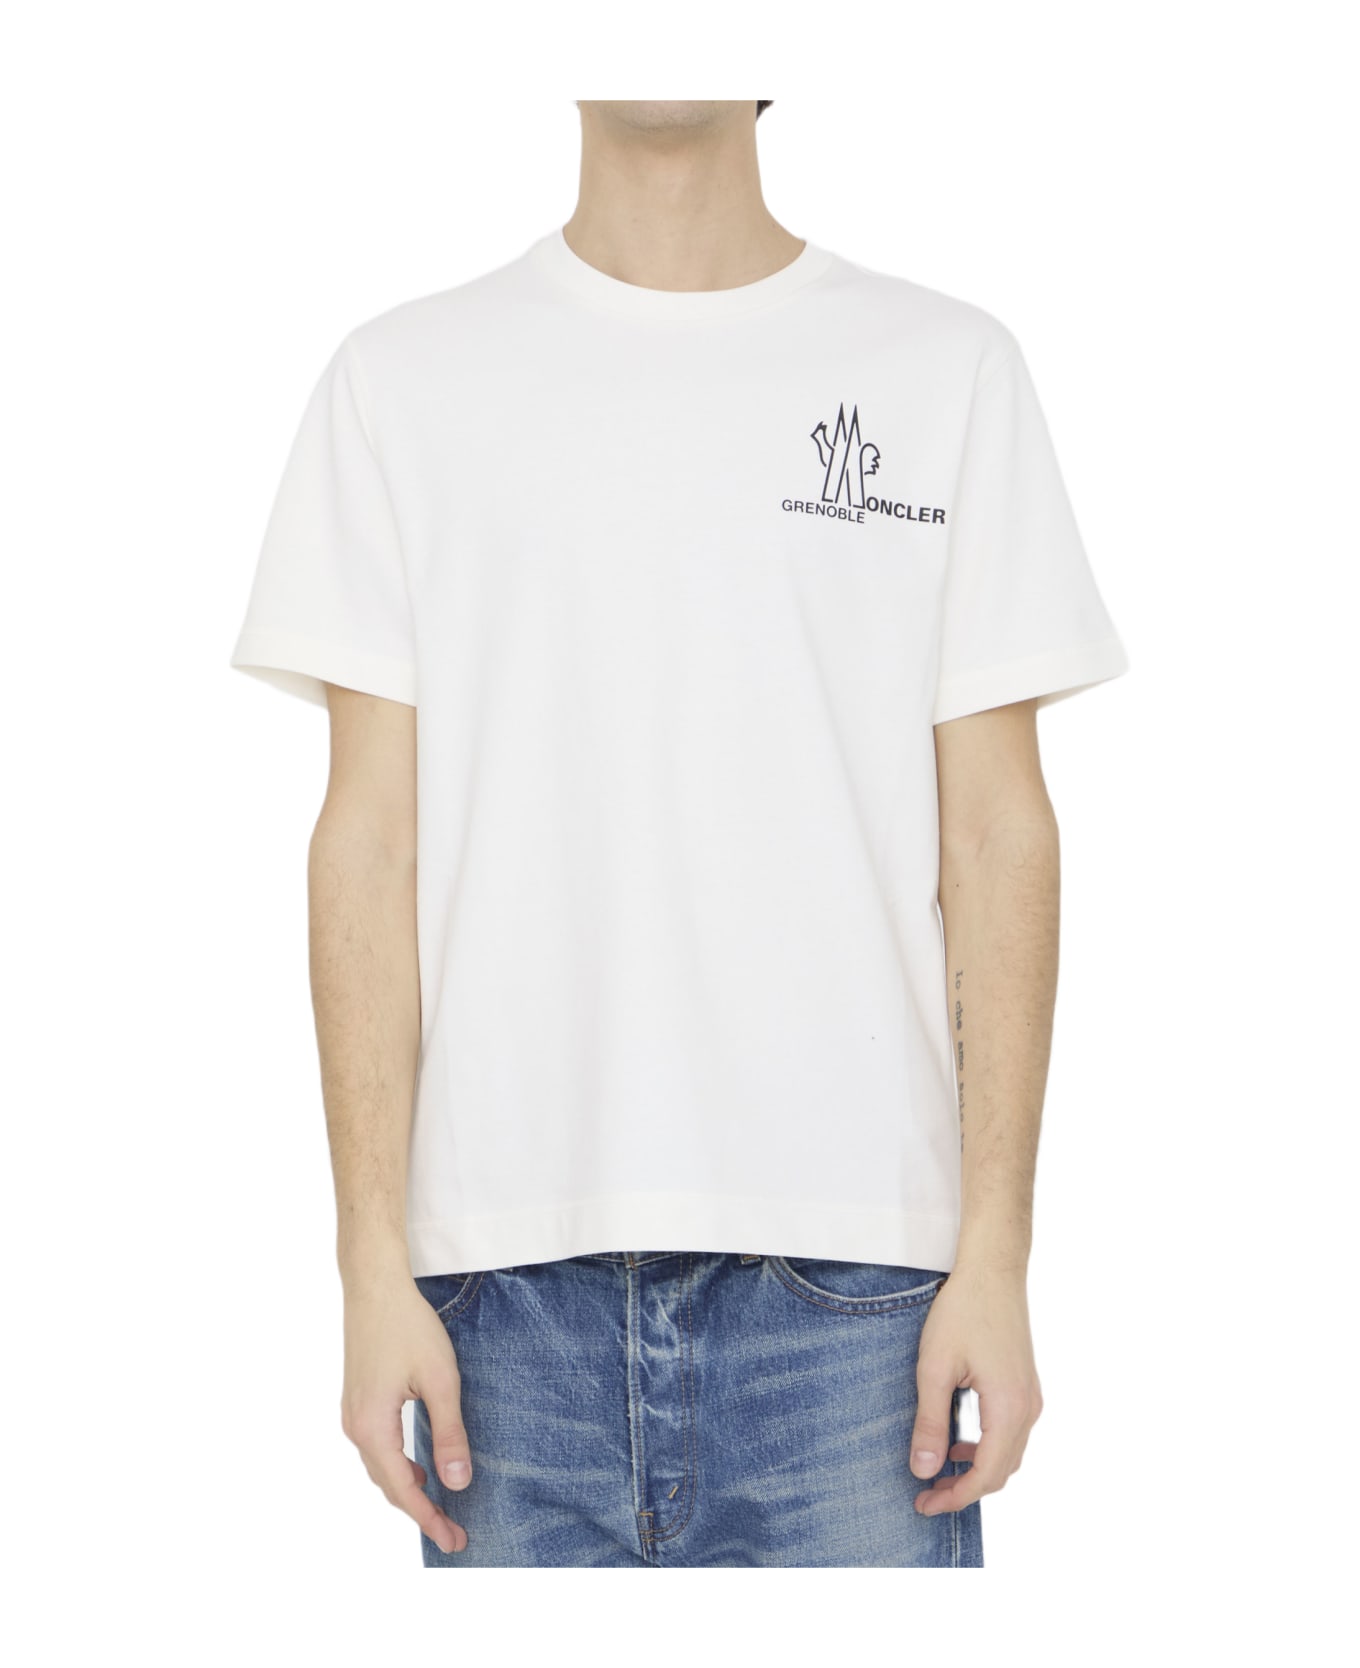 Moncler Grenoble Cotton T-shirt Tシャツ